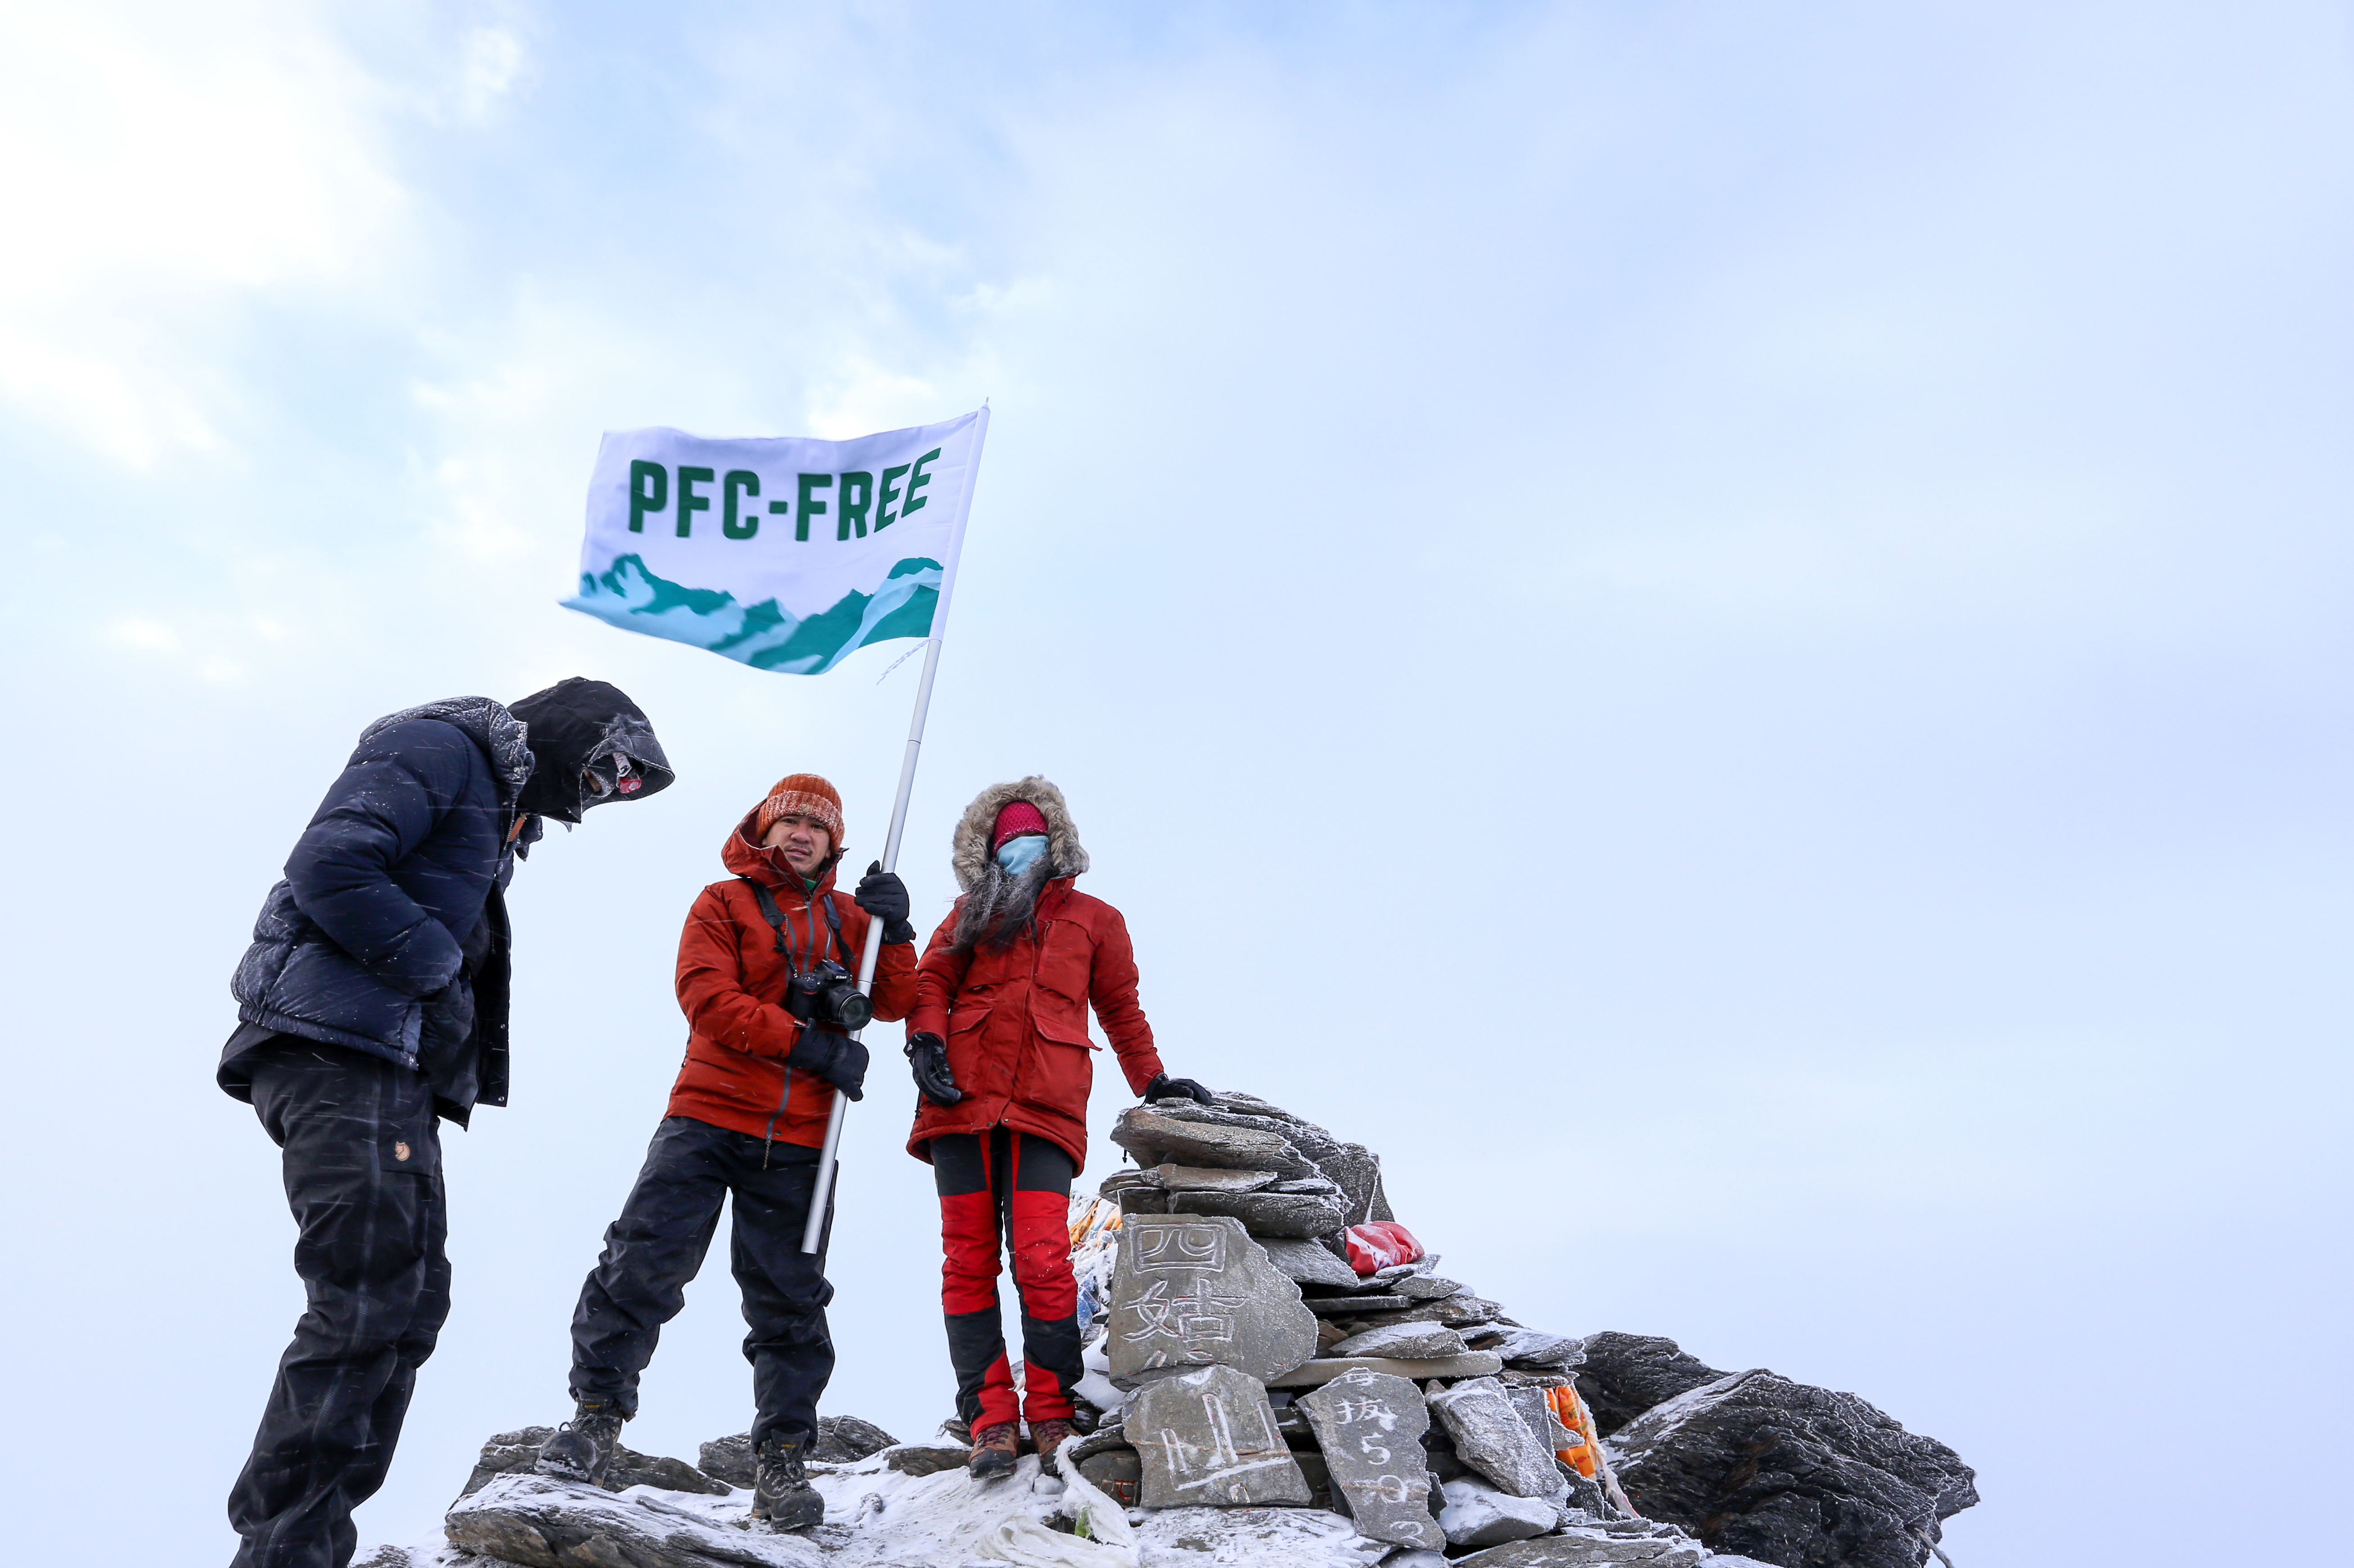 來自中國，香港及台灣三地的登山家，以較環保的方式登山，希望帶動更多戶外活動愛好者改用 PFC-free 產品，推動戶外品牌淘汰 PFCs